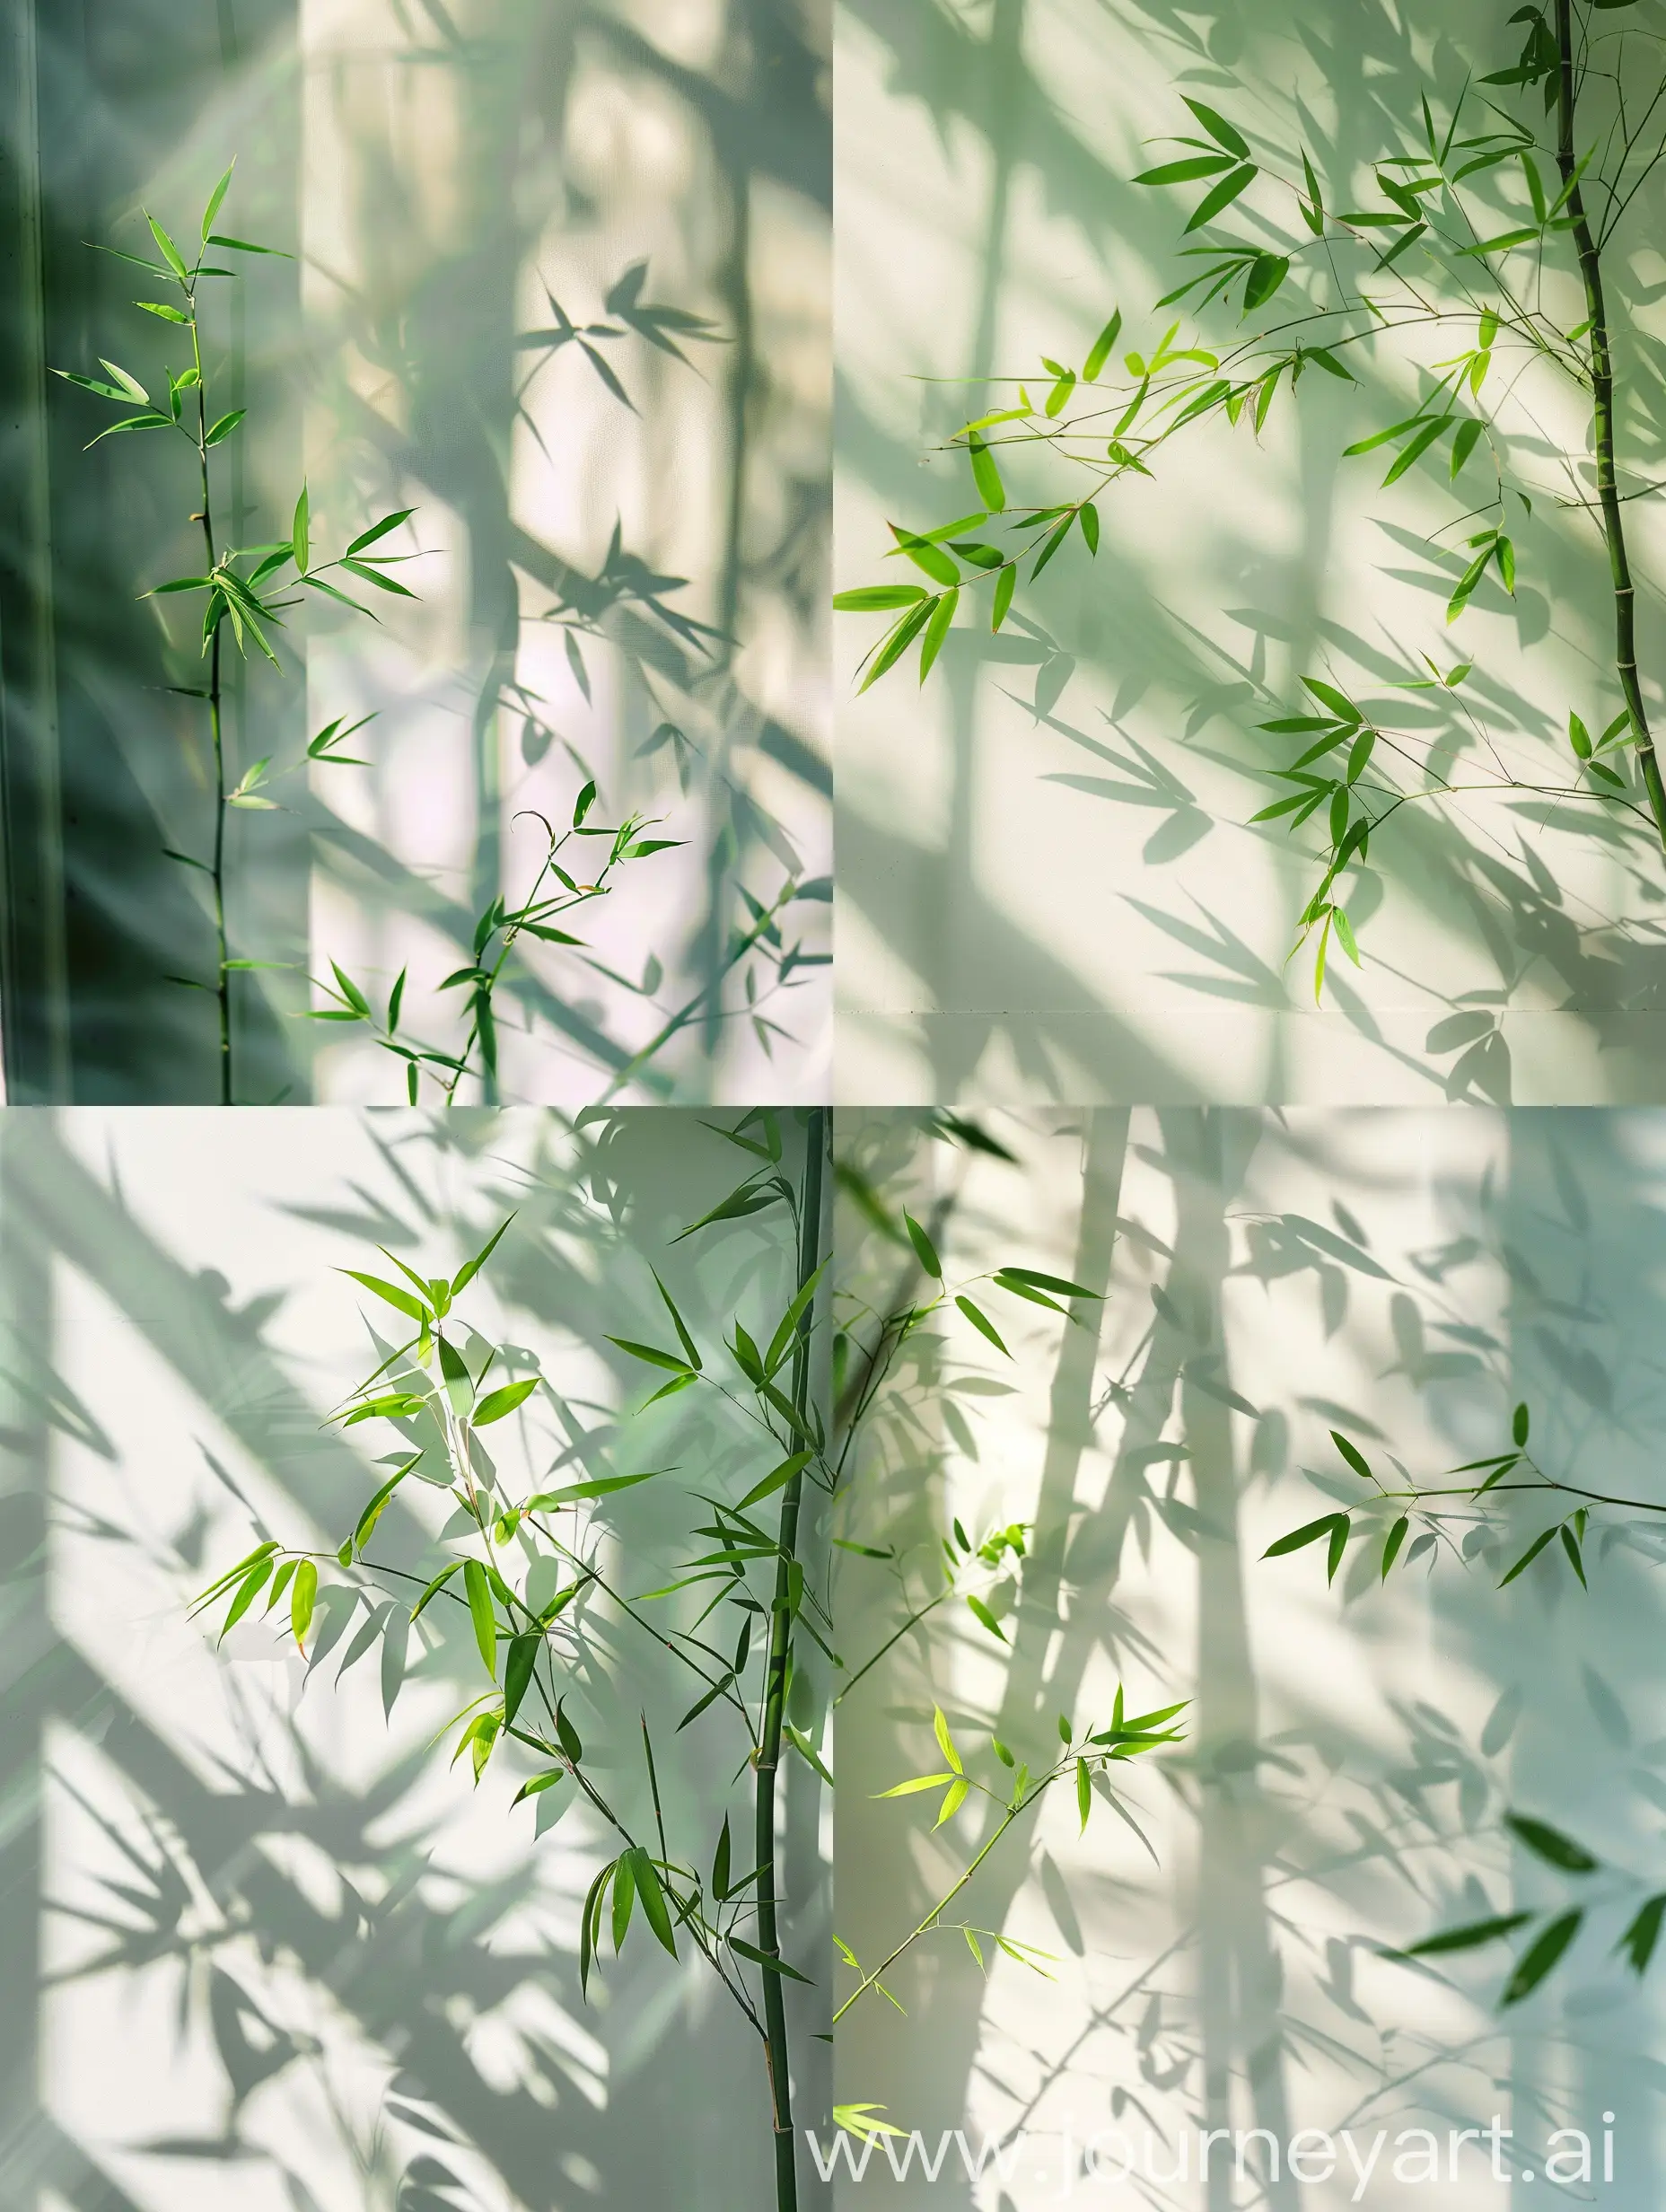 绿色的小叶片竹子，阴影倒影在白色墙壁上，户外的阳光照射进来，柔和，唯美主义